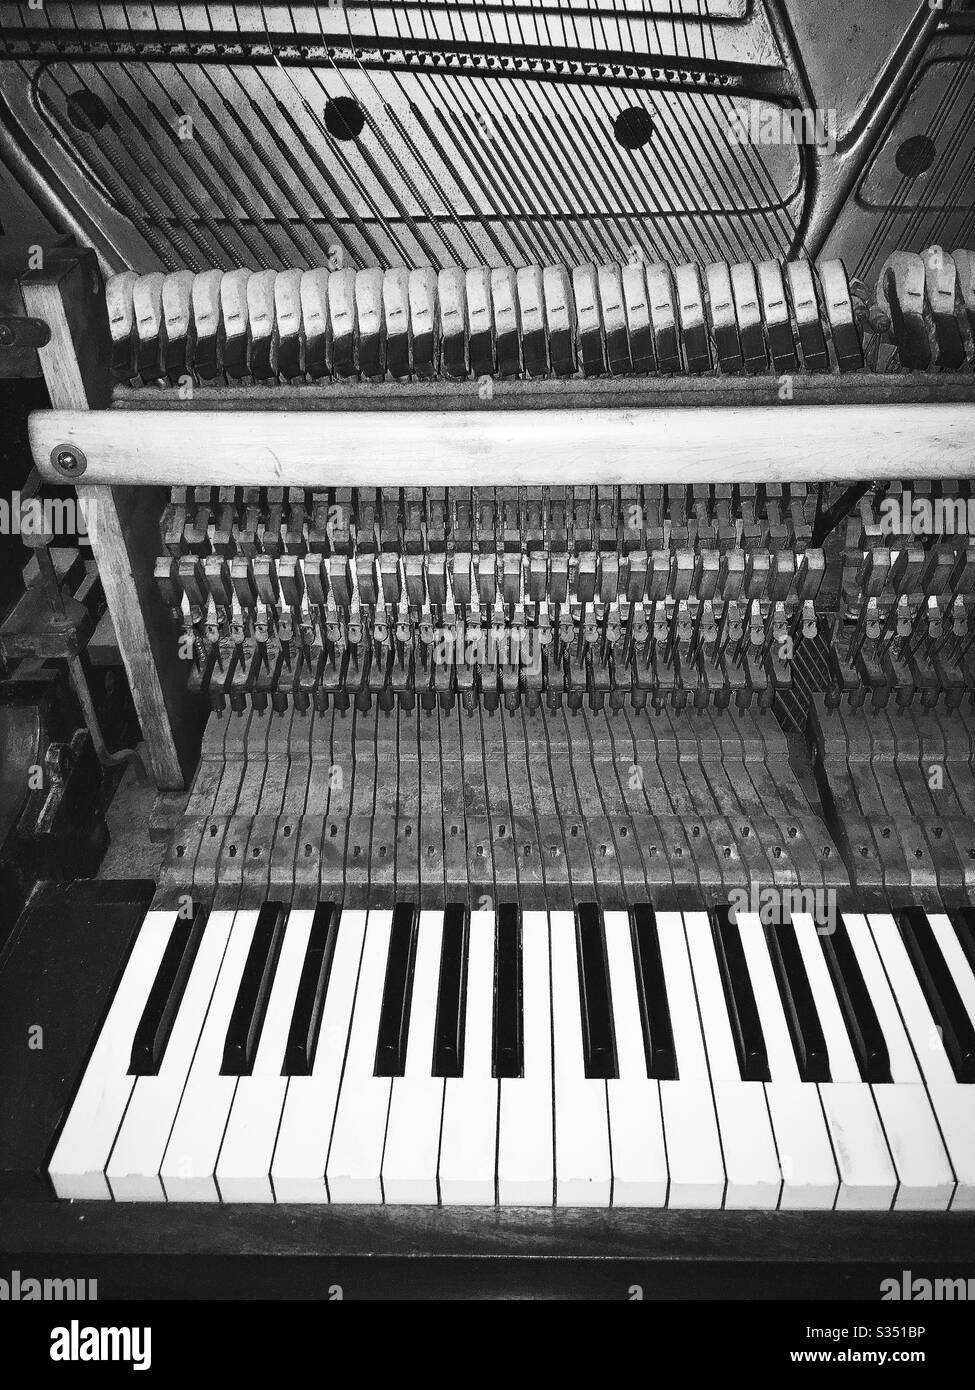 Photo en noir et blanc de l'intérieur d'un piano, montrant des marteaux, des feutres, des cordes, des chevilles de réglage et un clavier Banque D'Images